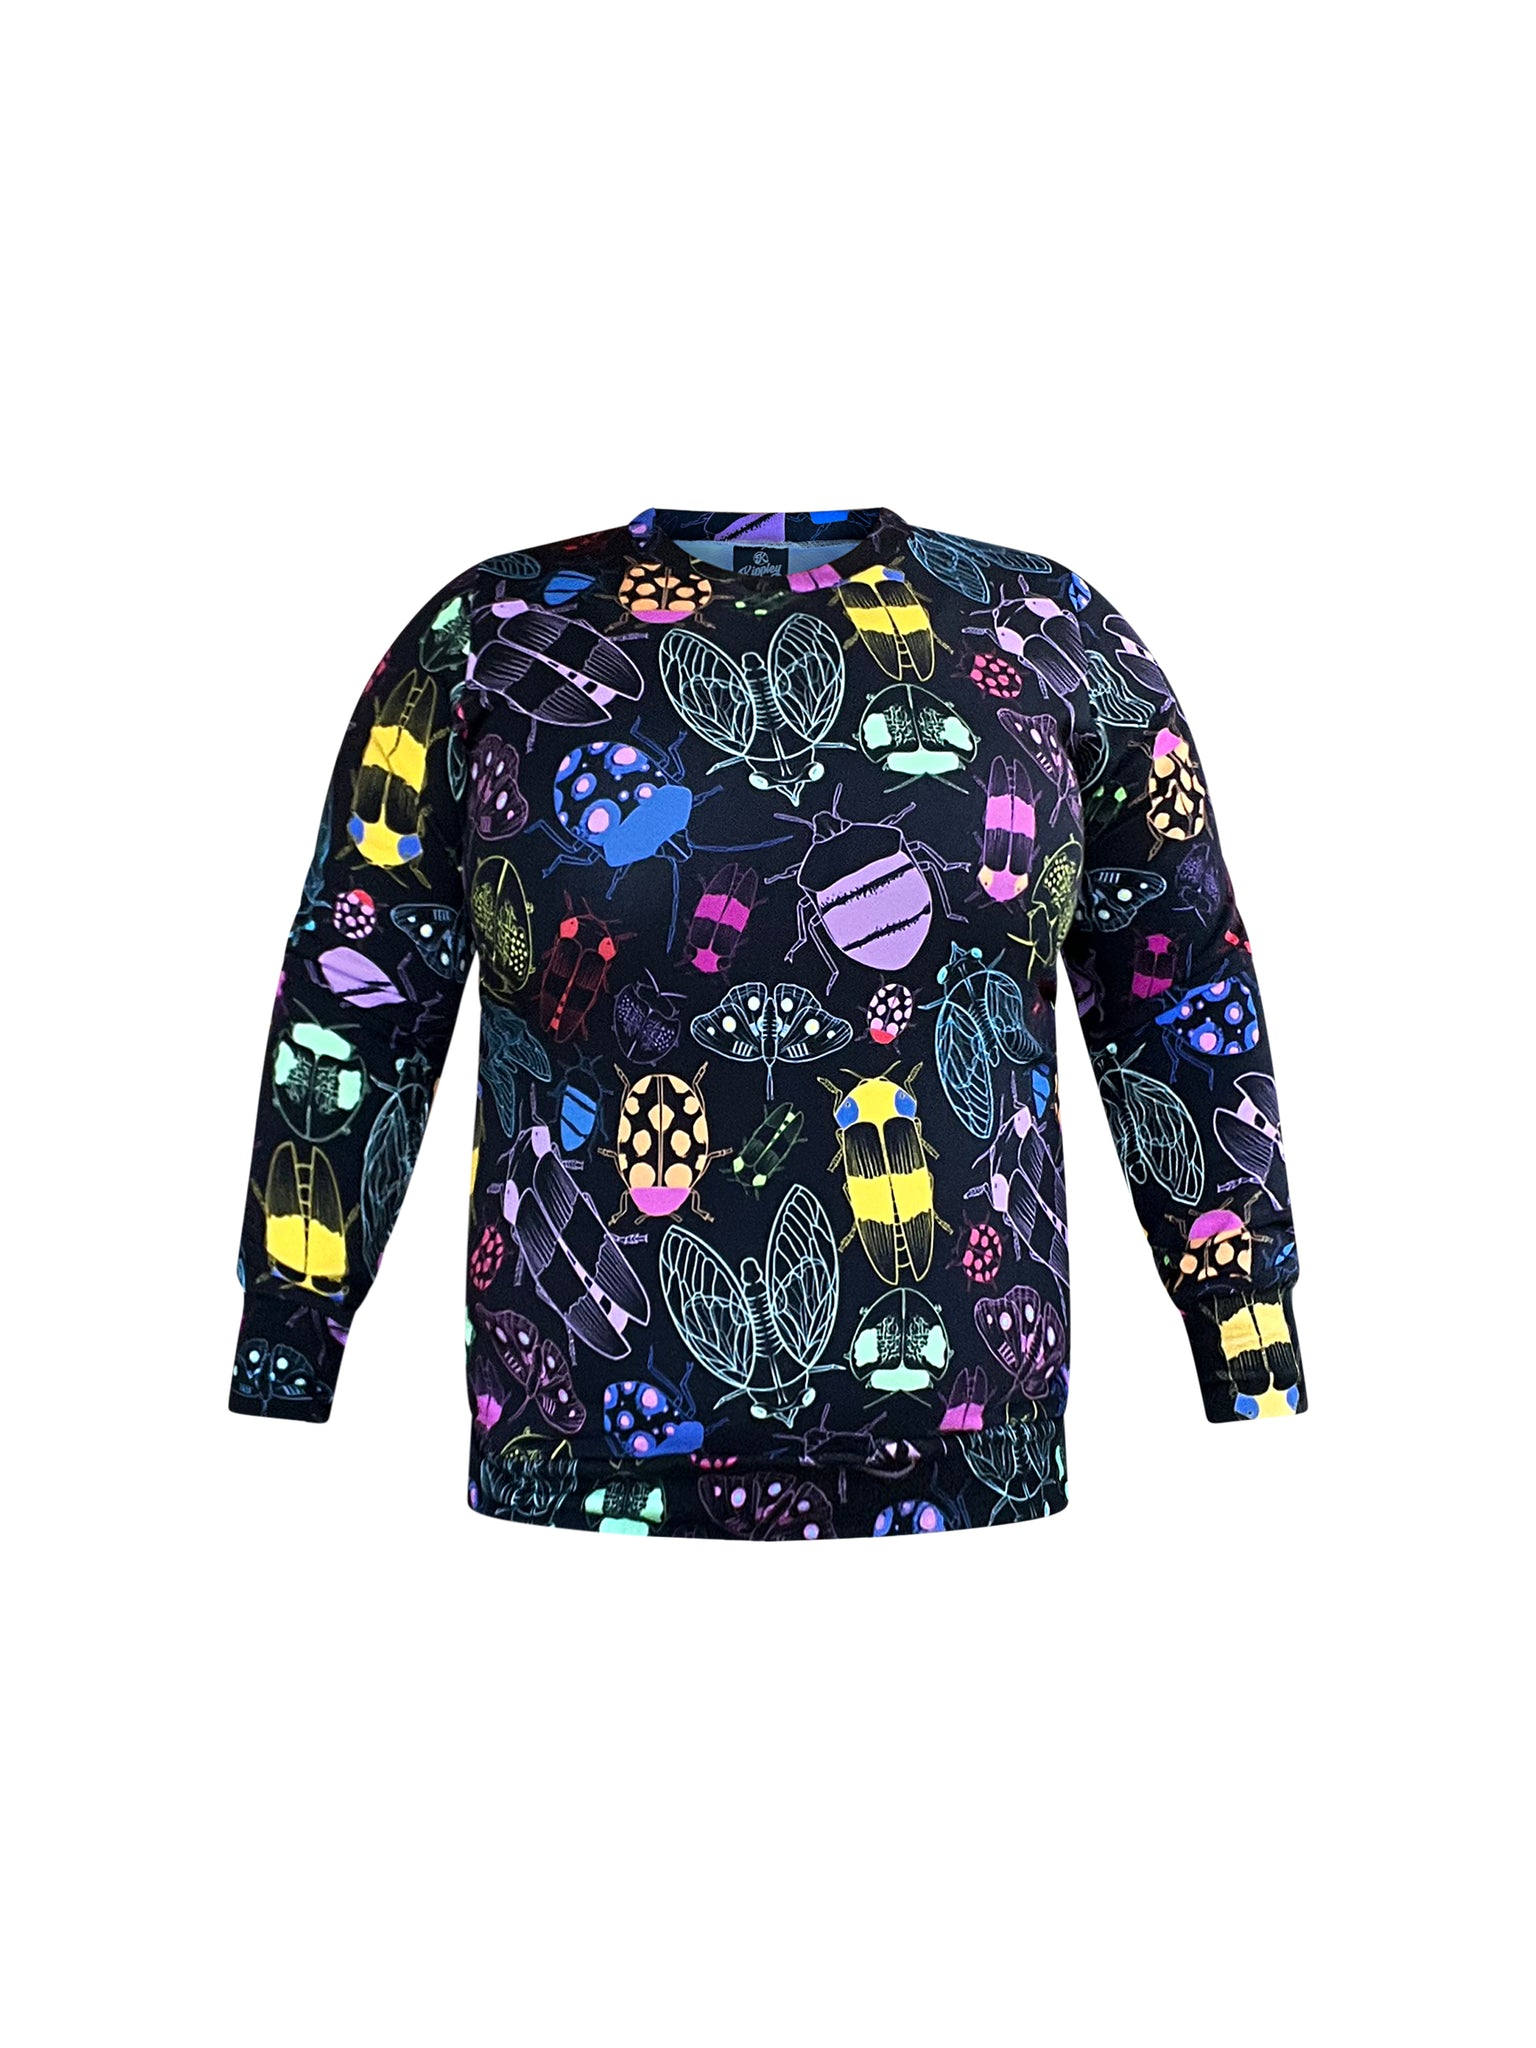 Ladies Sweatshirt in 'Xray Bugs' - Kasey Rainbow